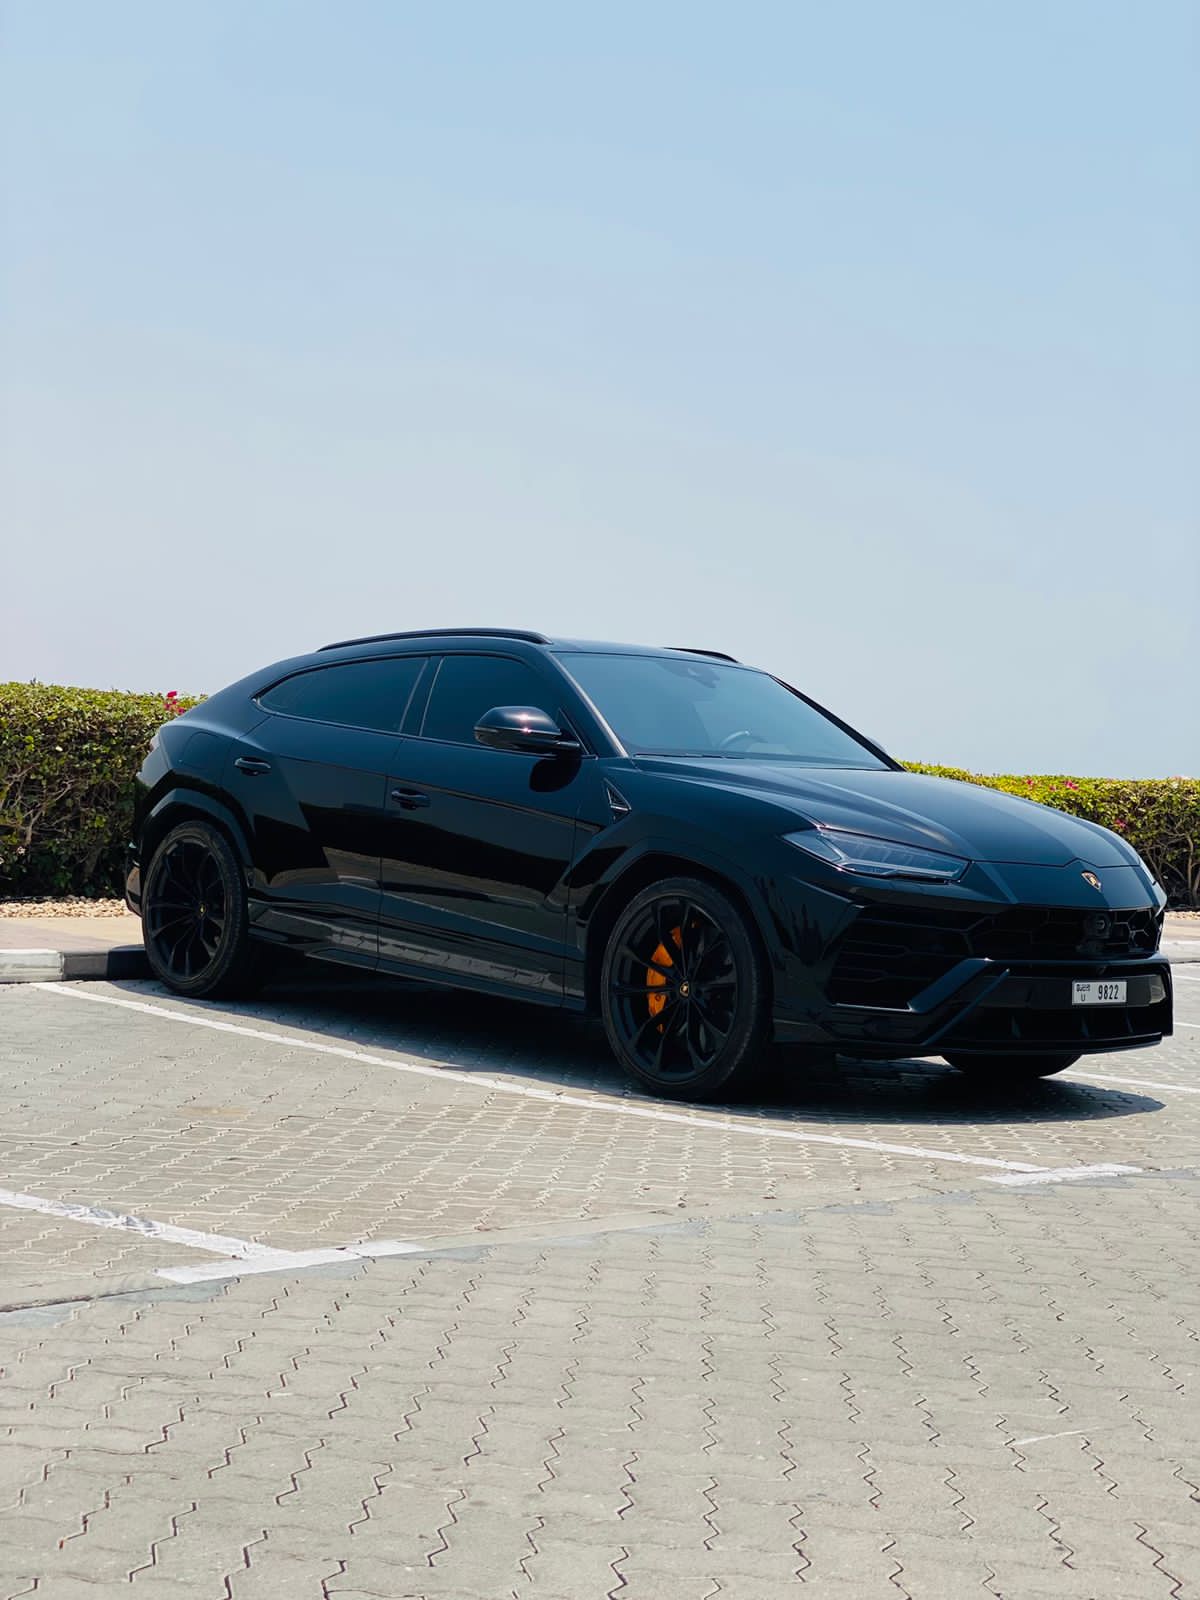 Lamborghini Urus - 14 March 2019 - Autogespot